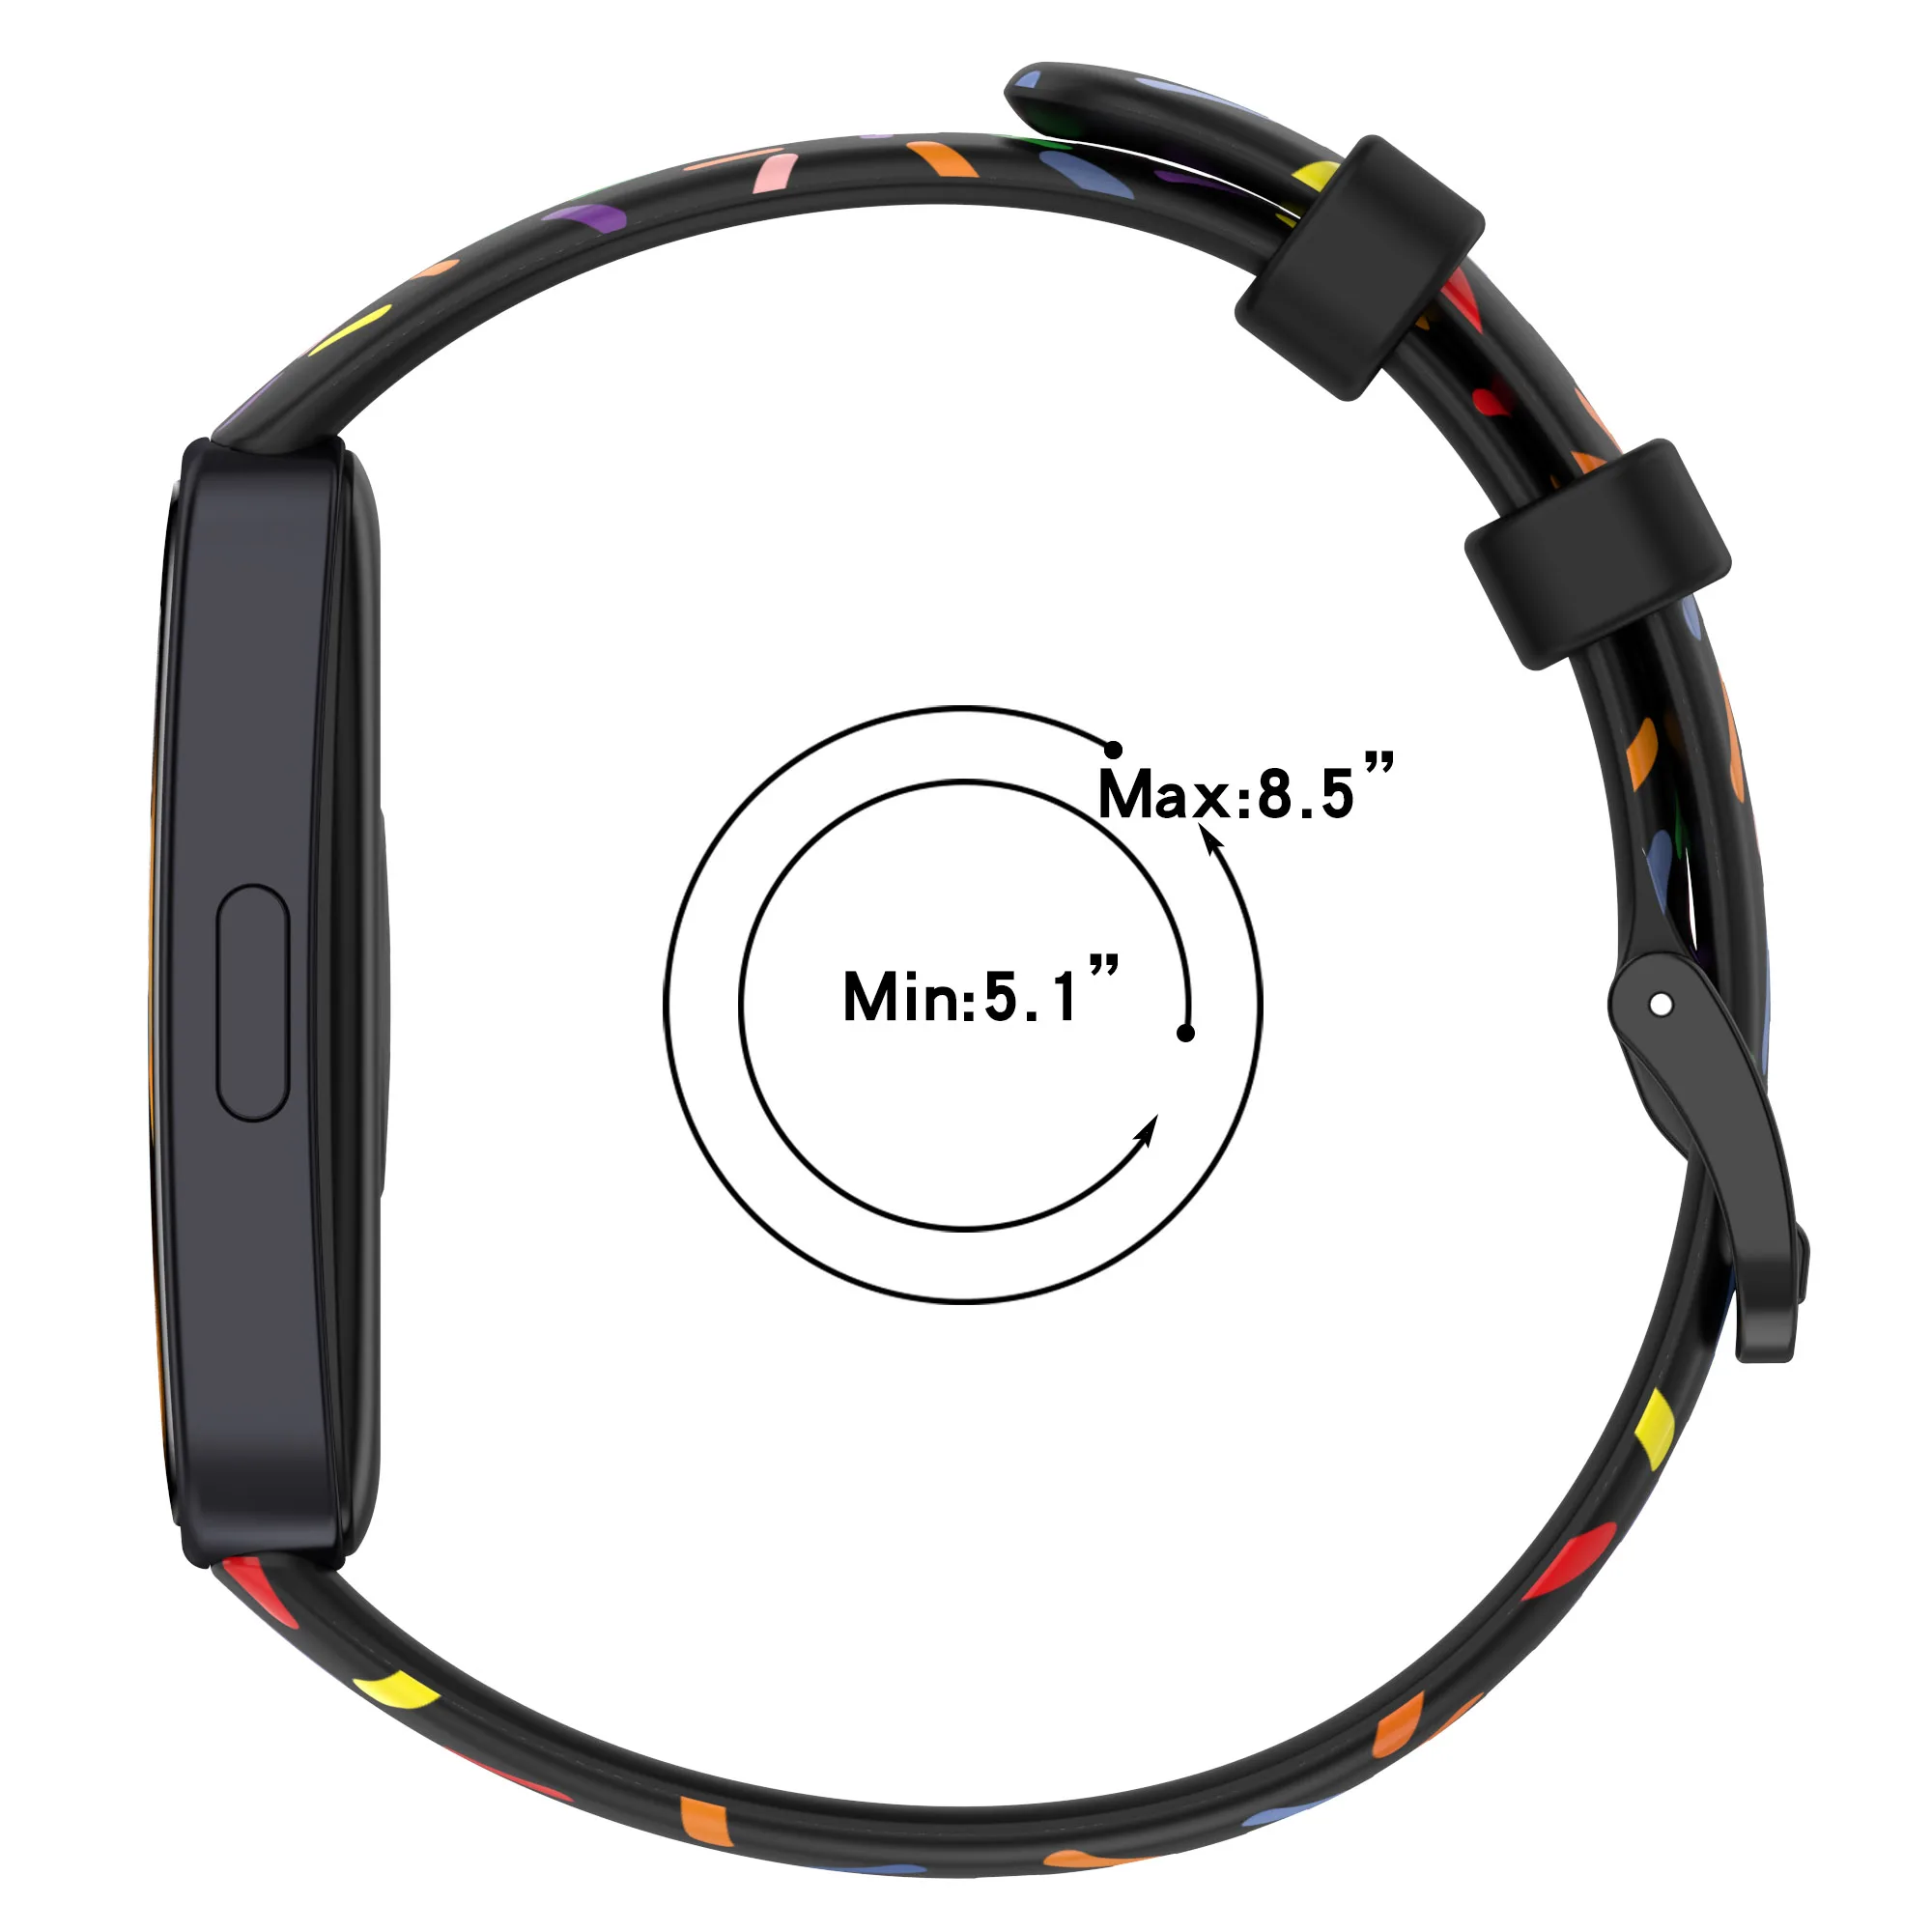 Силиконов ремък Pride Издание за Huawei Band 8, разменени гривна Rainbow Sports Smartwatch за Huawei Band 8, Аксесоари